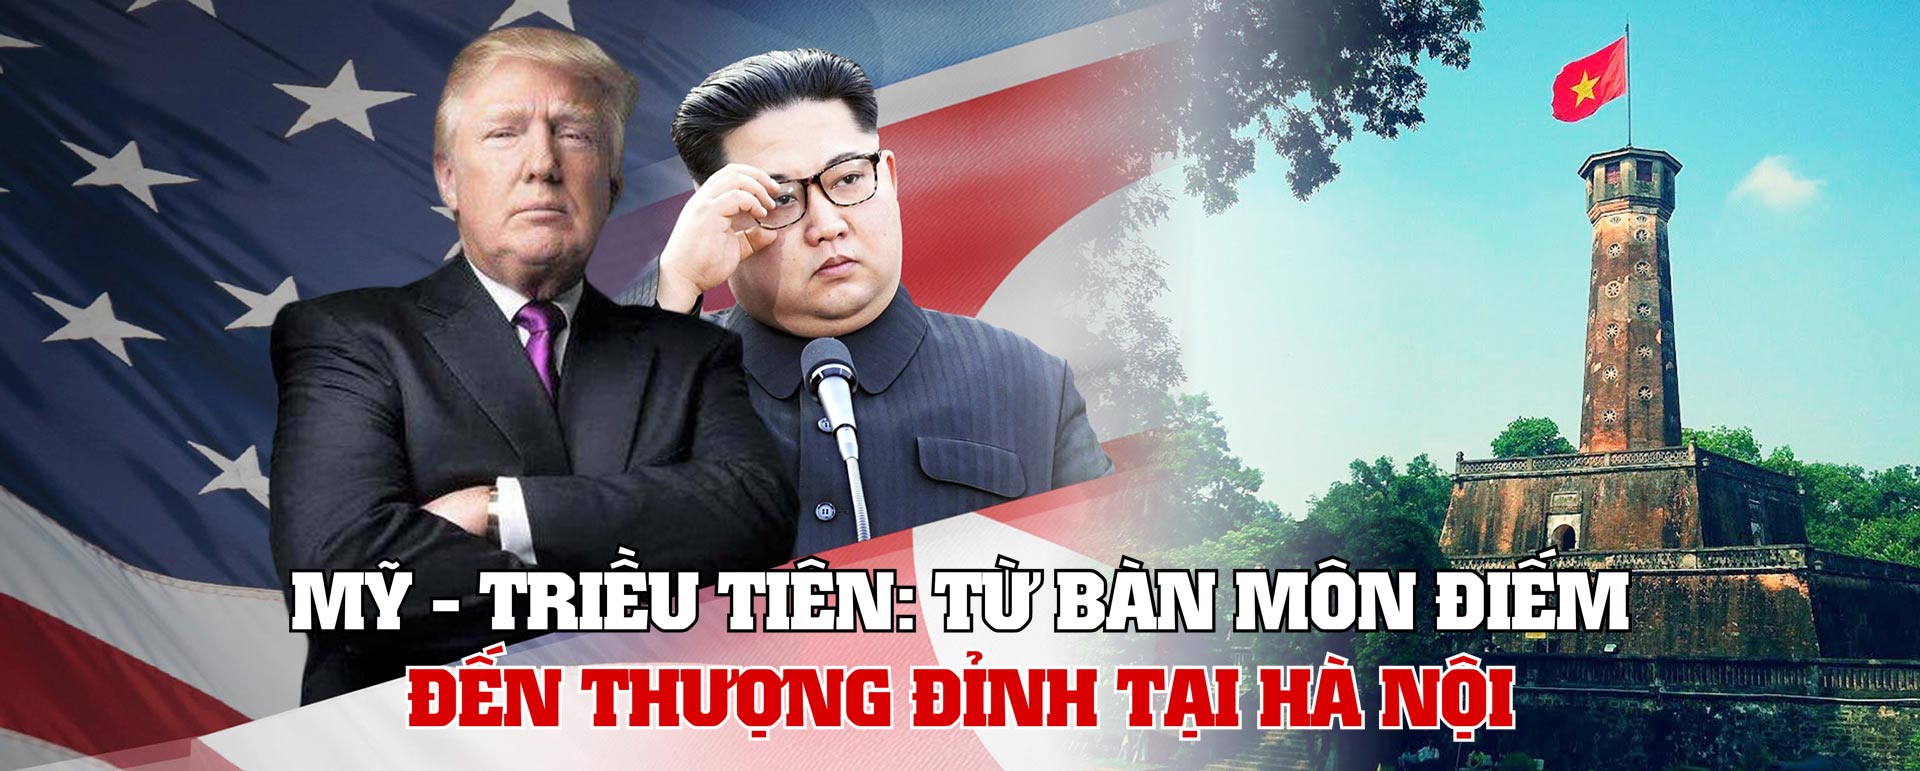 Mỹ - Triều Tiên: Từ Bàn Môn Điếm đến thượng đỉnh Hà Nội - 1